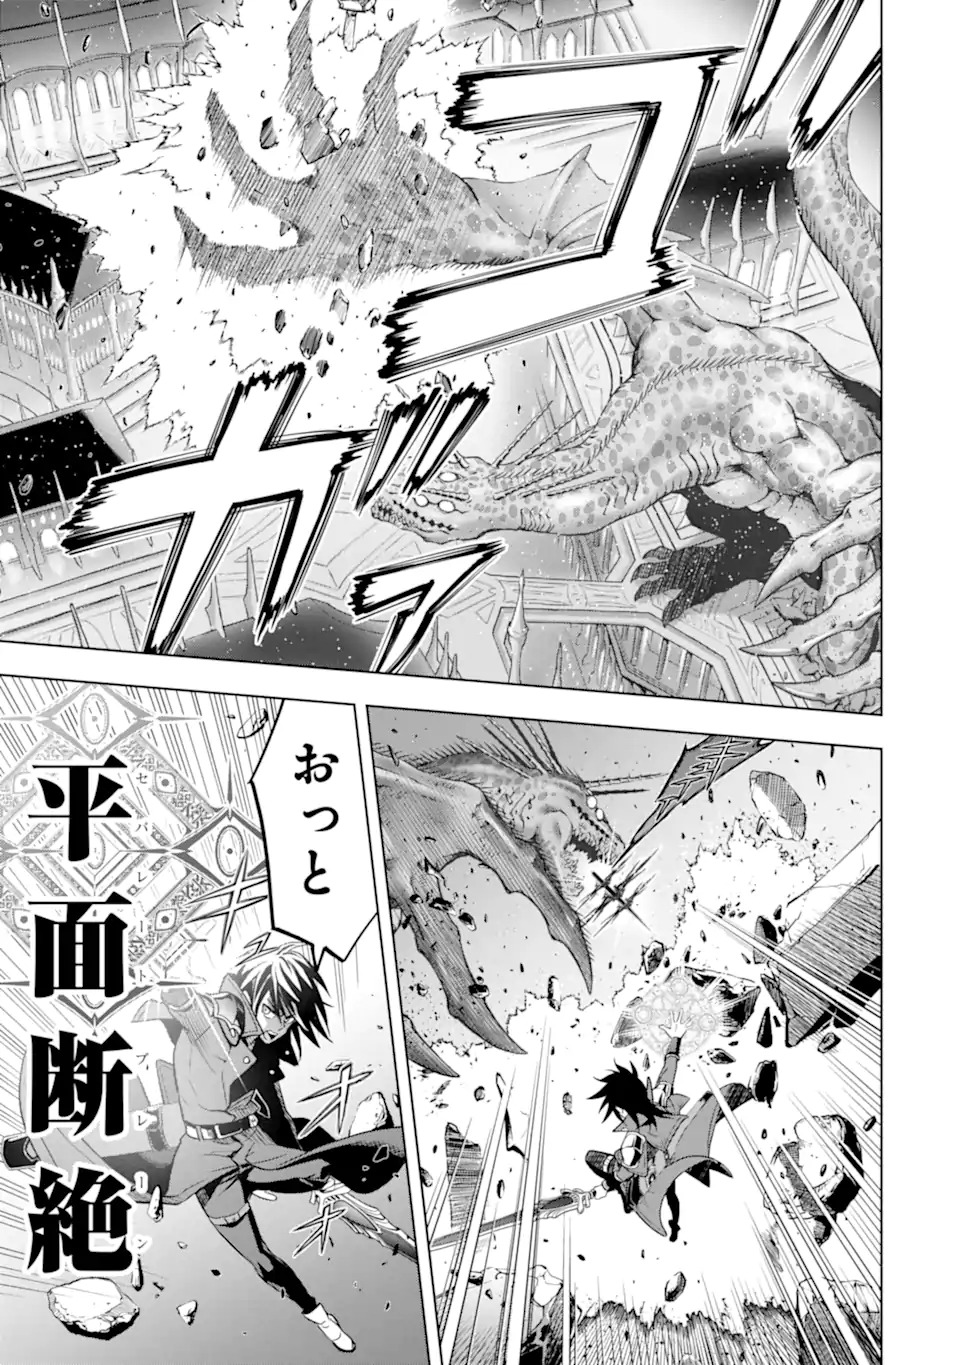 Koko wa Ore ni Makasete Saki ni Ike to Itte kara 10 Nen ga Tattara Densetsu ni Natteita - Chapter 38.4 - Page 9